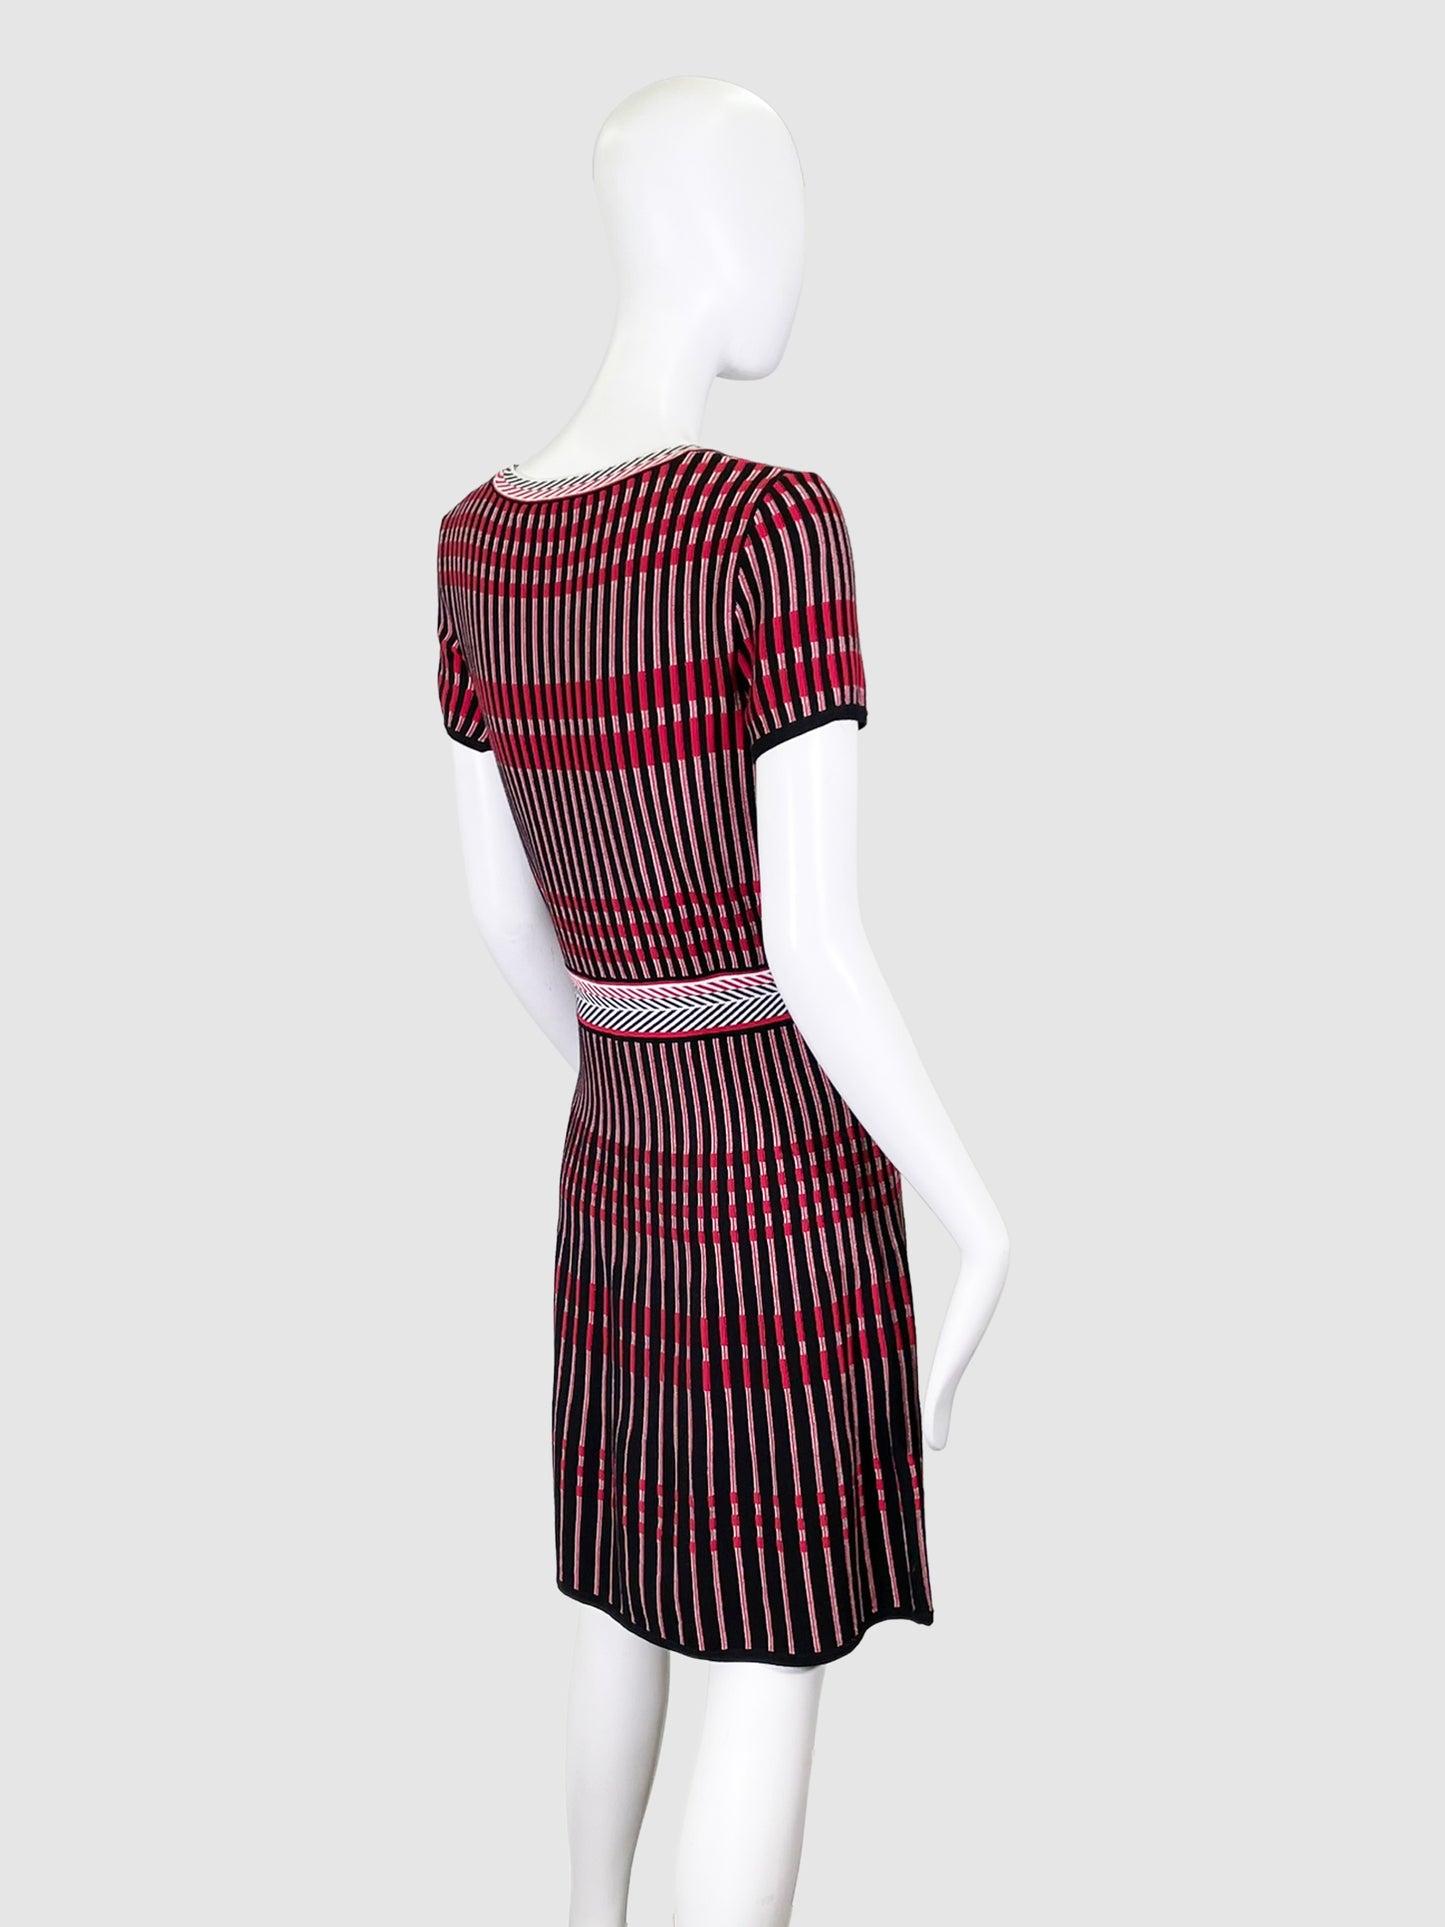 Hugo Boss Red Stripes Knit Dress - Size S